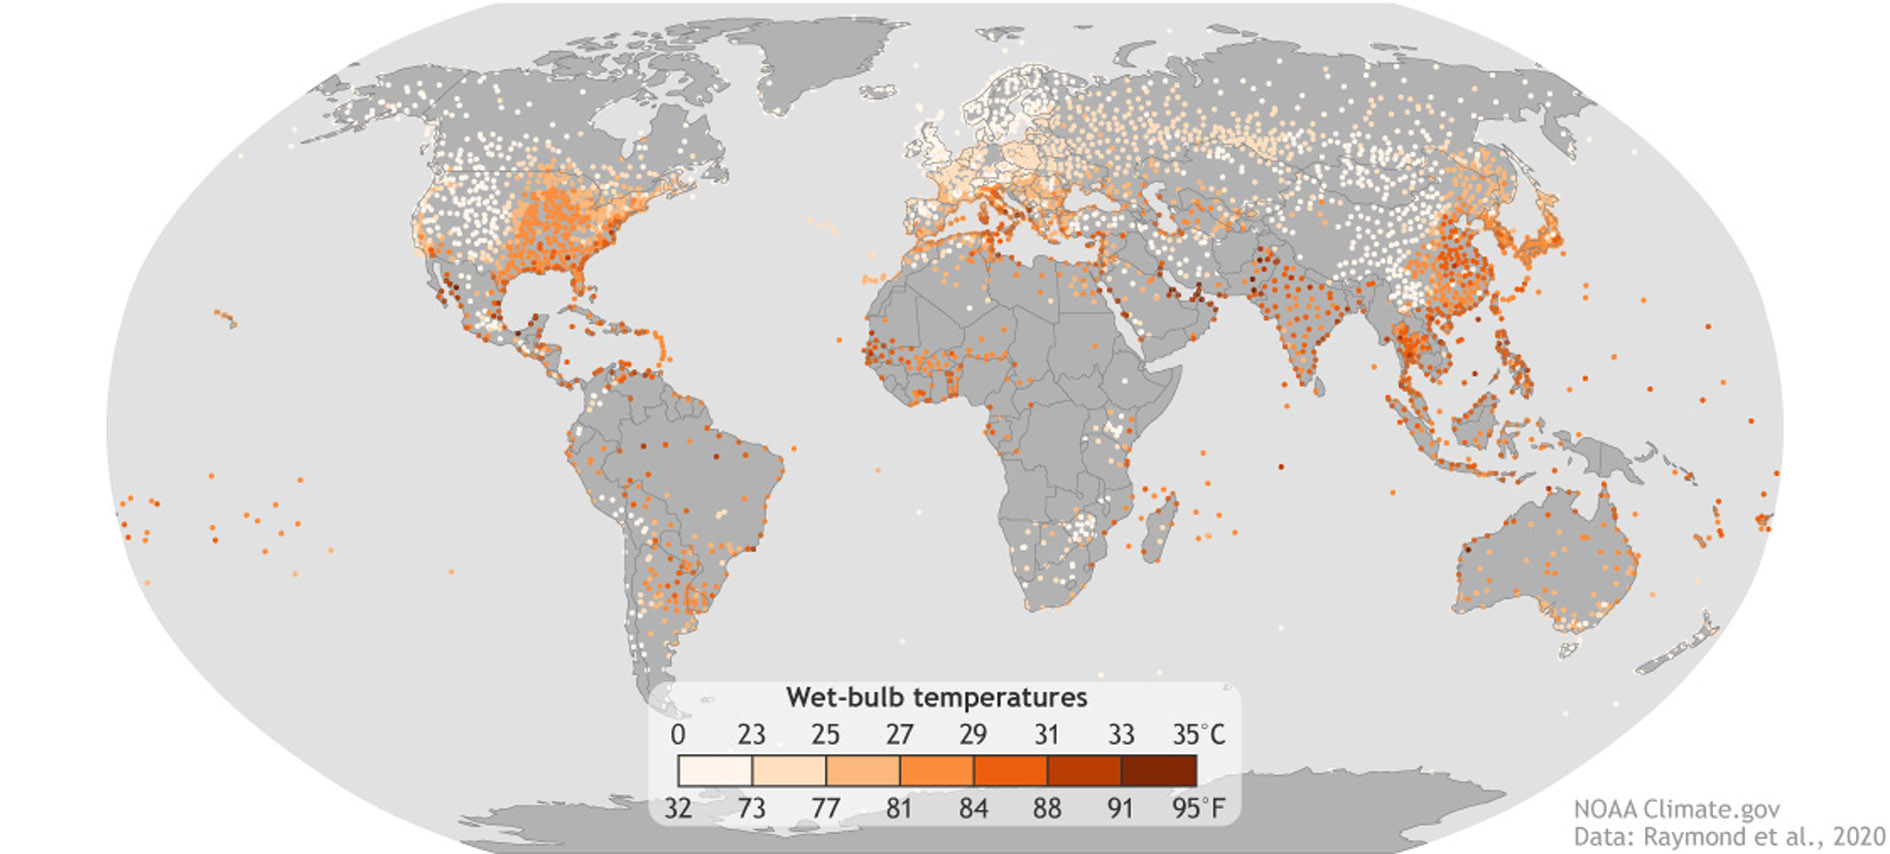 Na mapie wskazano miejsca, w których w latach 1979-2017 wystąpiły epizody wysokiej temperatury i wilgotności powietrza (najgorętsze 0,1 proc. dziennych maksymalnych temperatur termometru wilgotnego). Niektóre obszary – jak Indie, Australia, czy tez kraje Zatoki Perskiej i Ameryki Środkowej – doświadczyły już warunków na poziomie lub w pobliżu granicy 35°C (95°F).